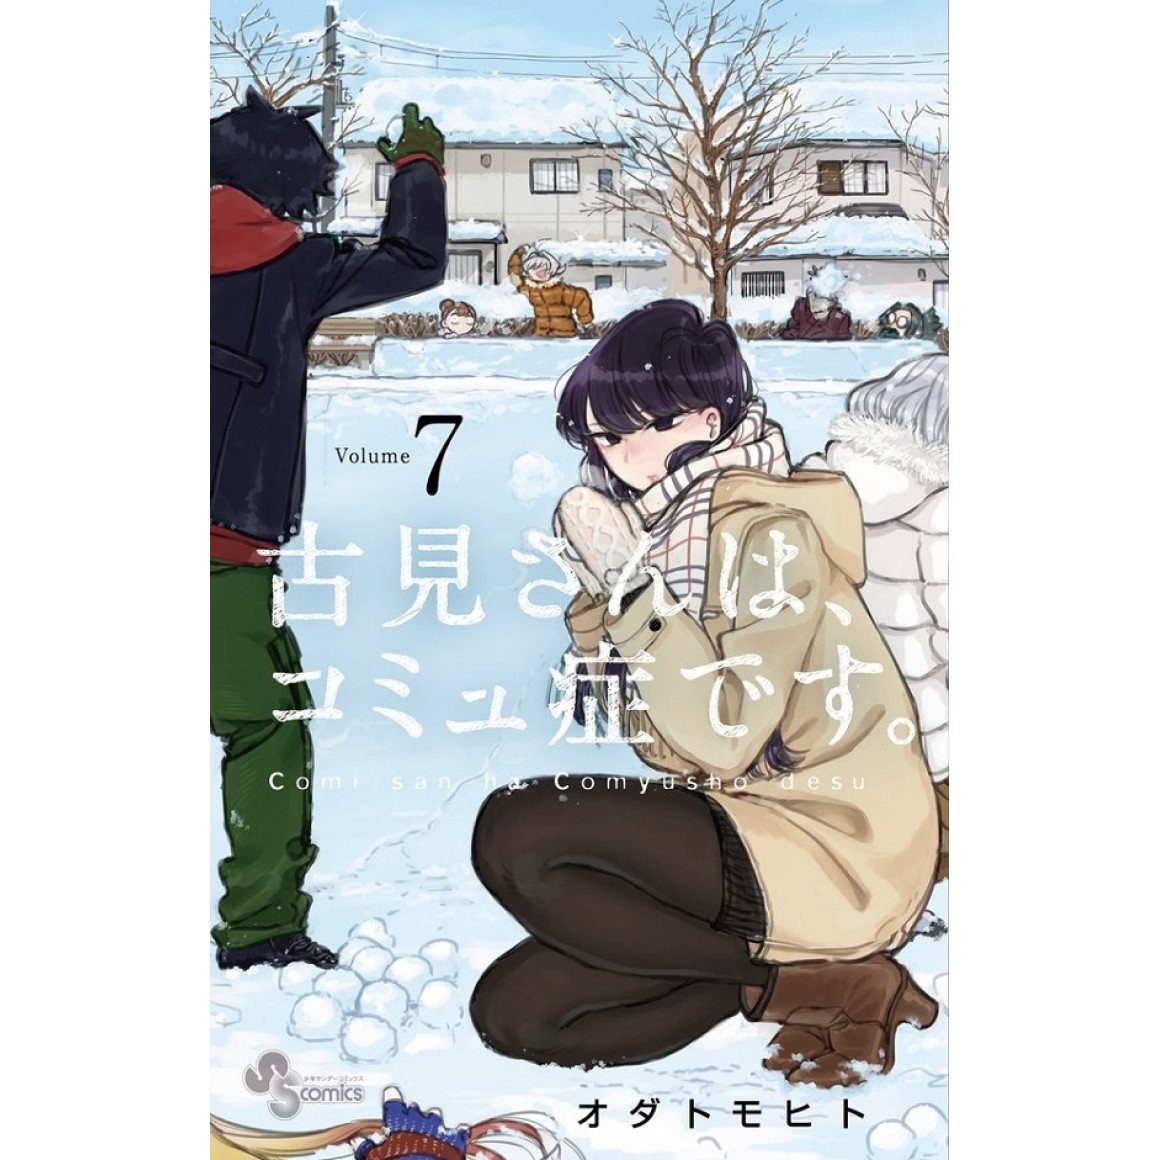 ART] Komi-san wa, Komyushou desu (Komi Can't Communicate) : r/manga